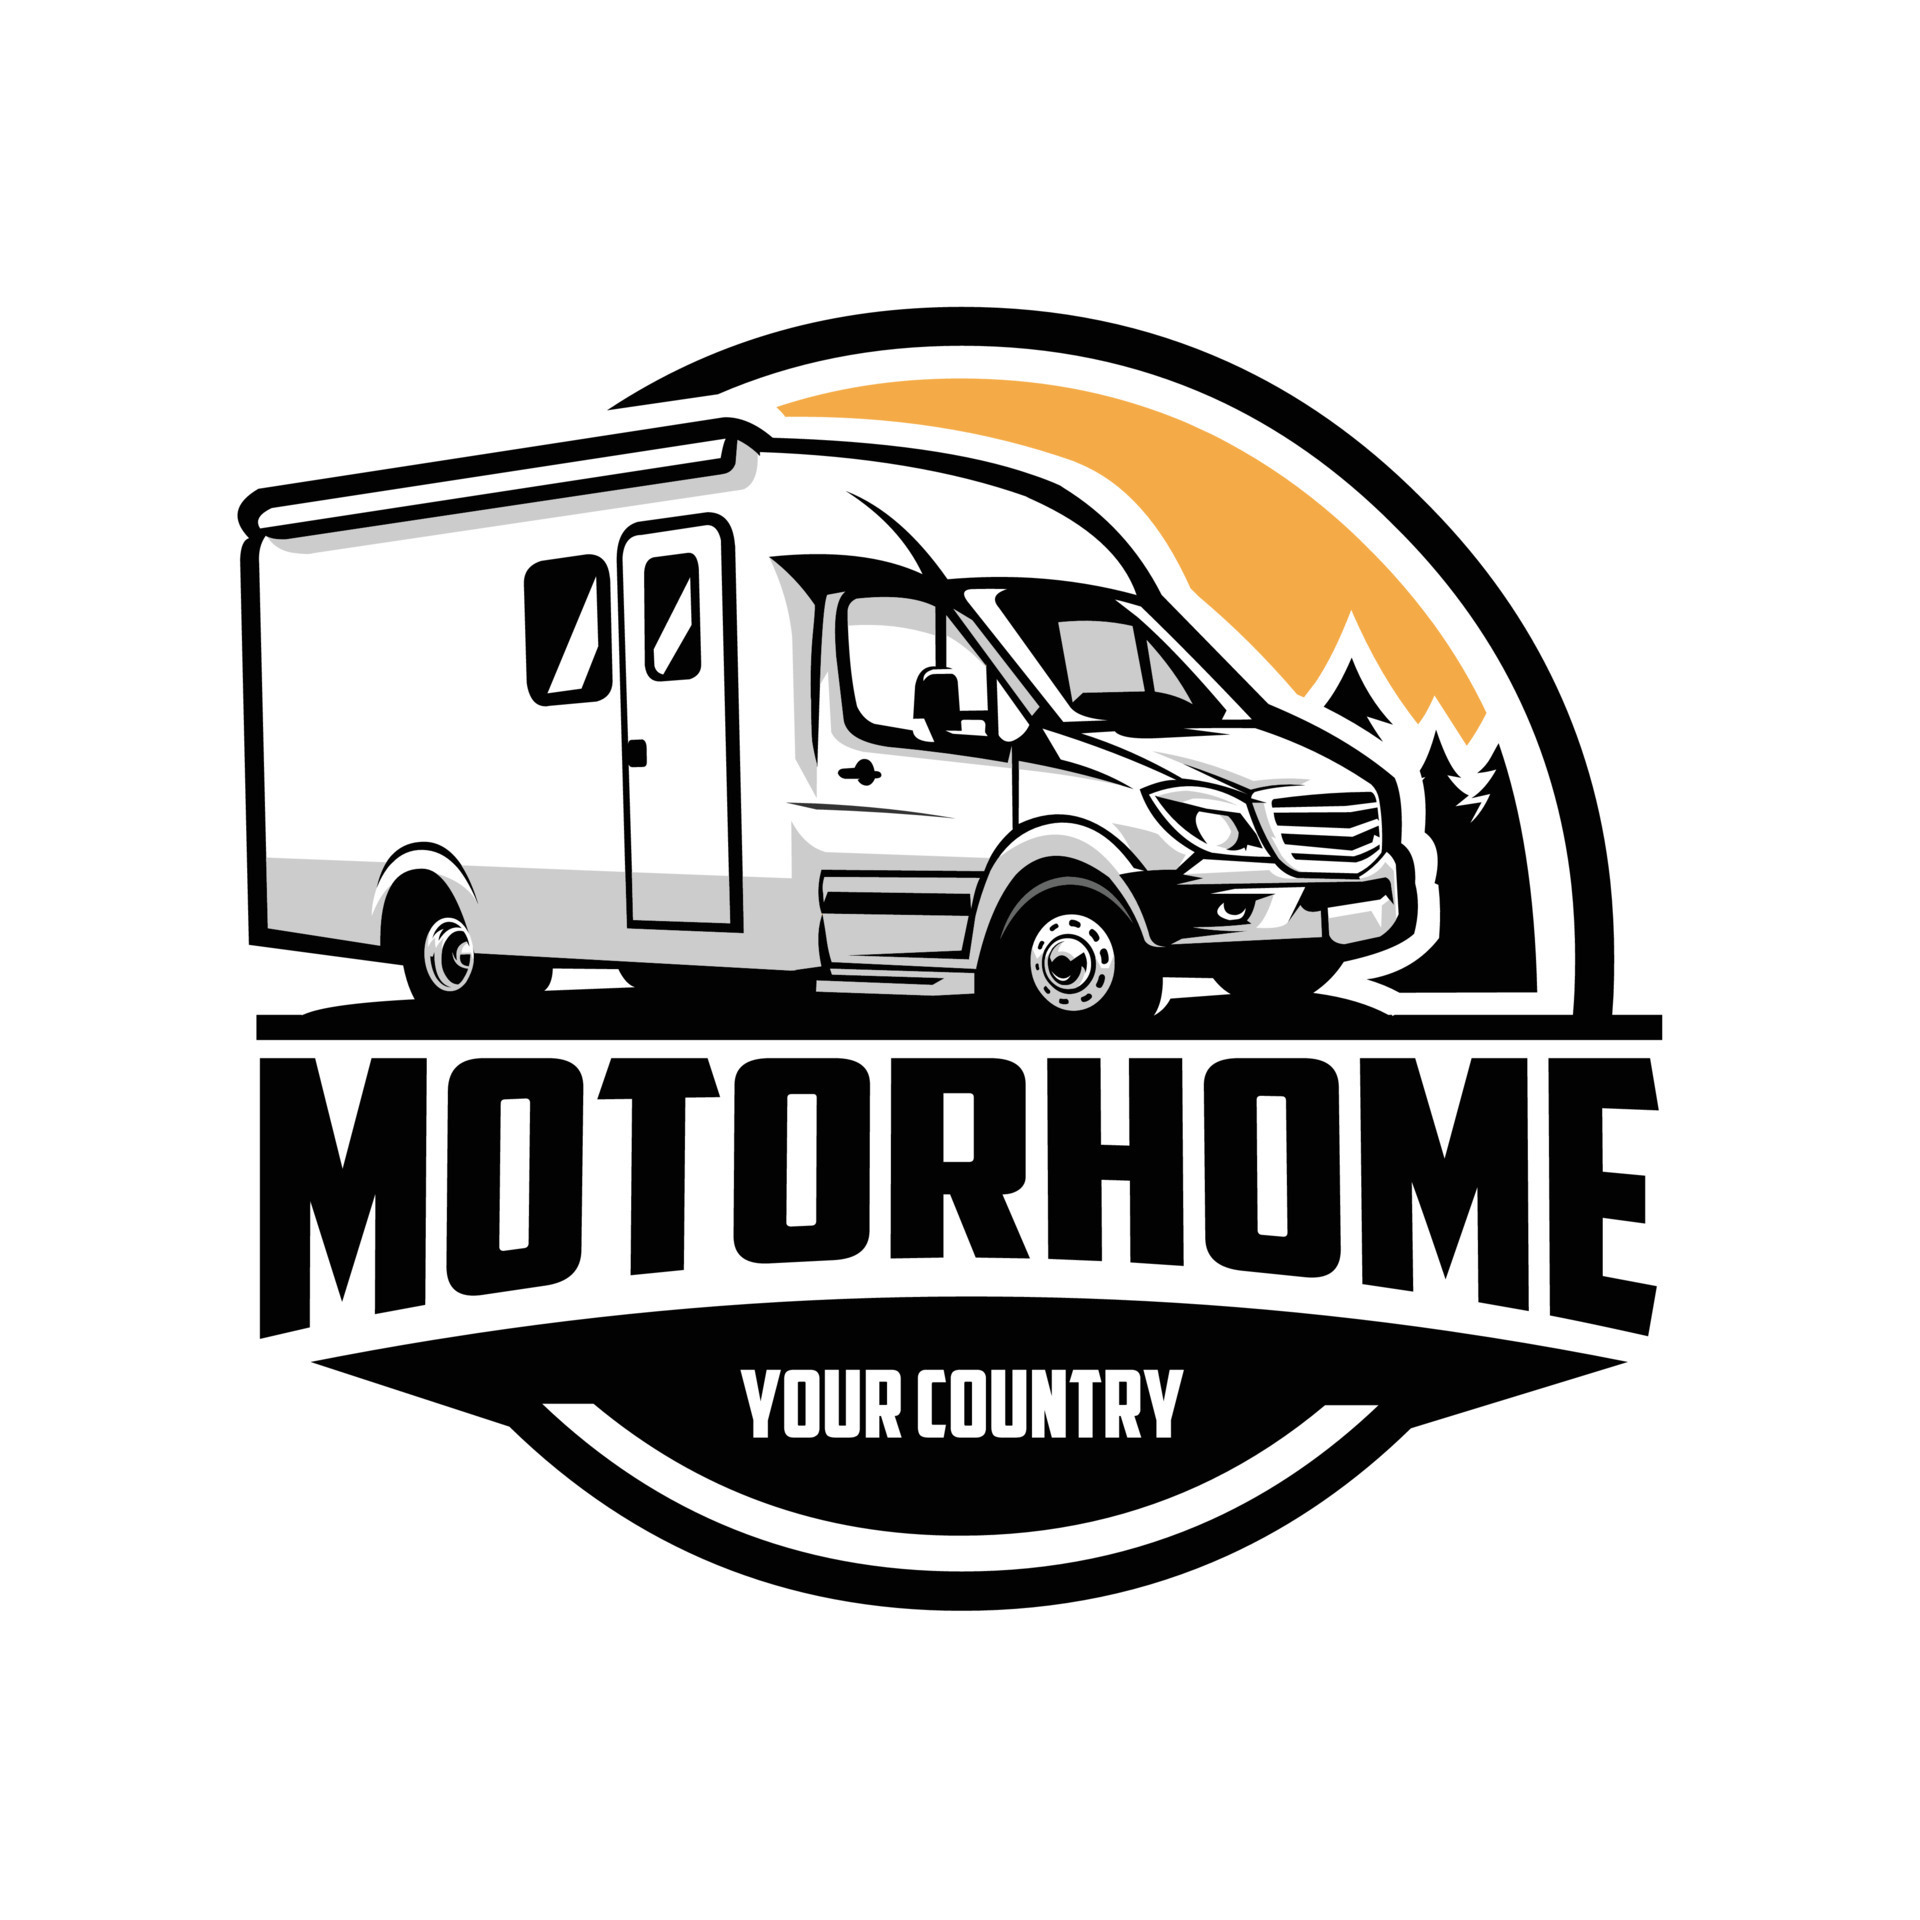 Motorhome camper van circle emblem logo illustration. Best for sticker ...